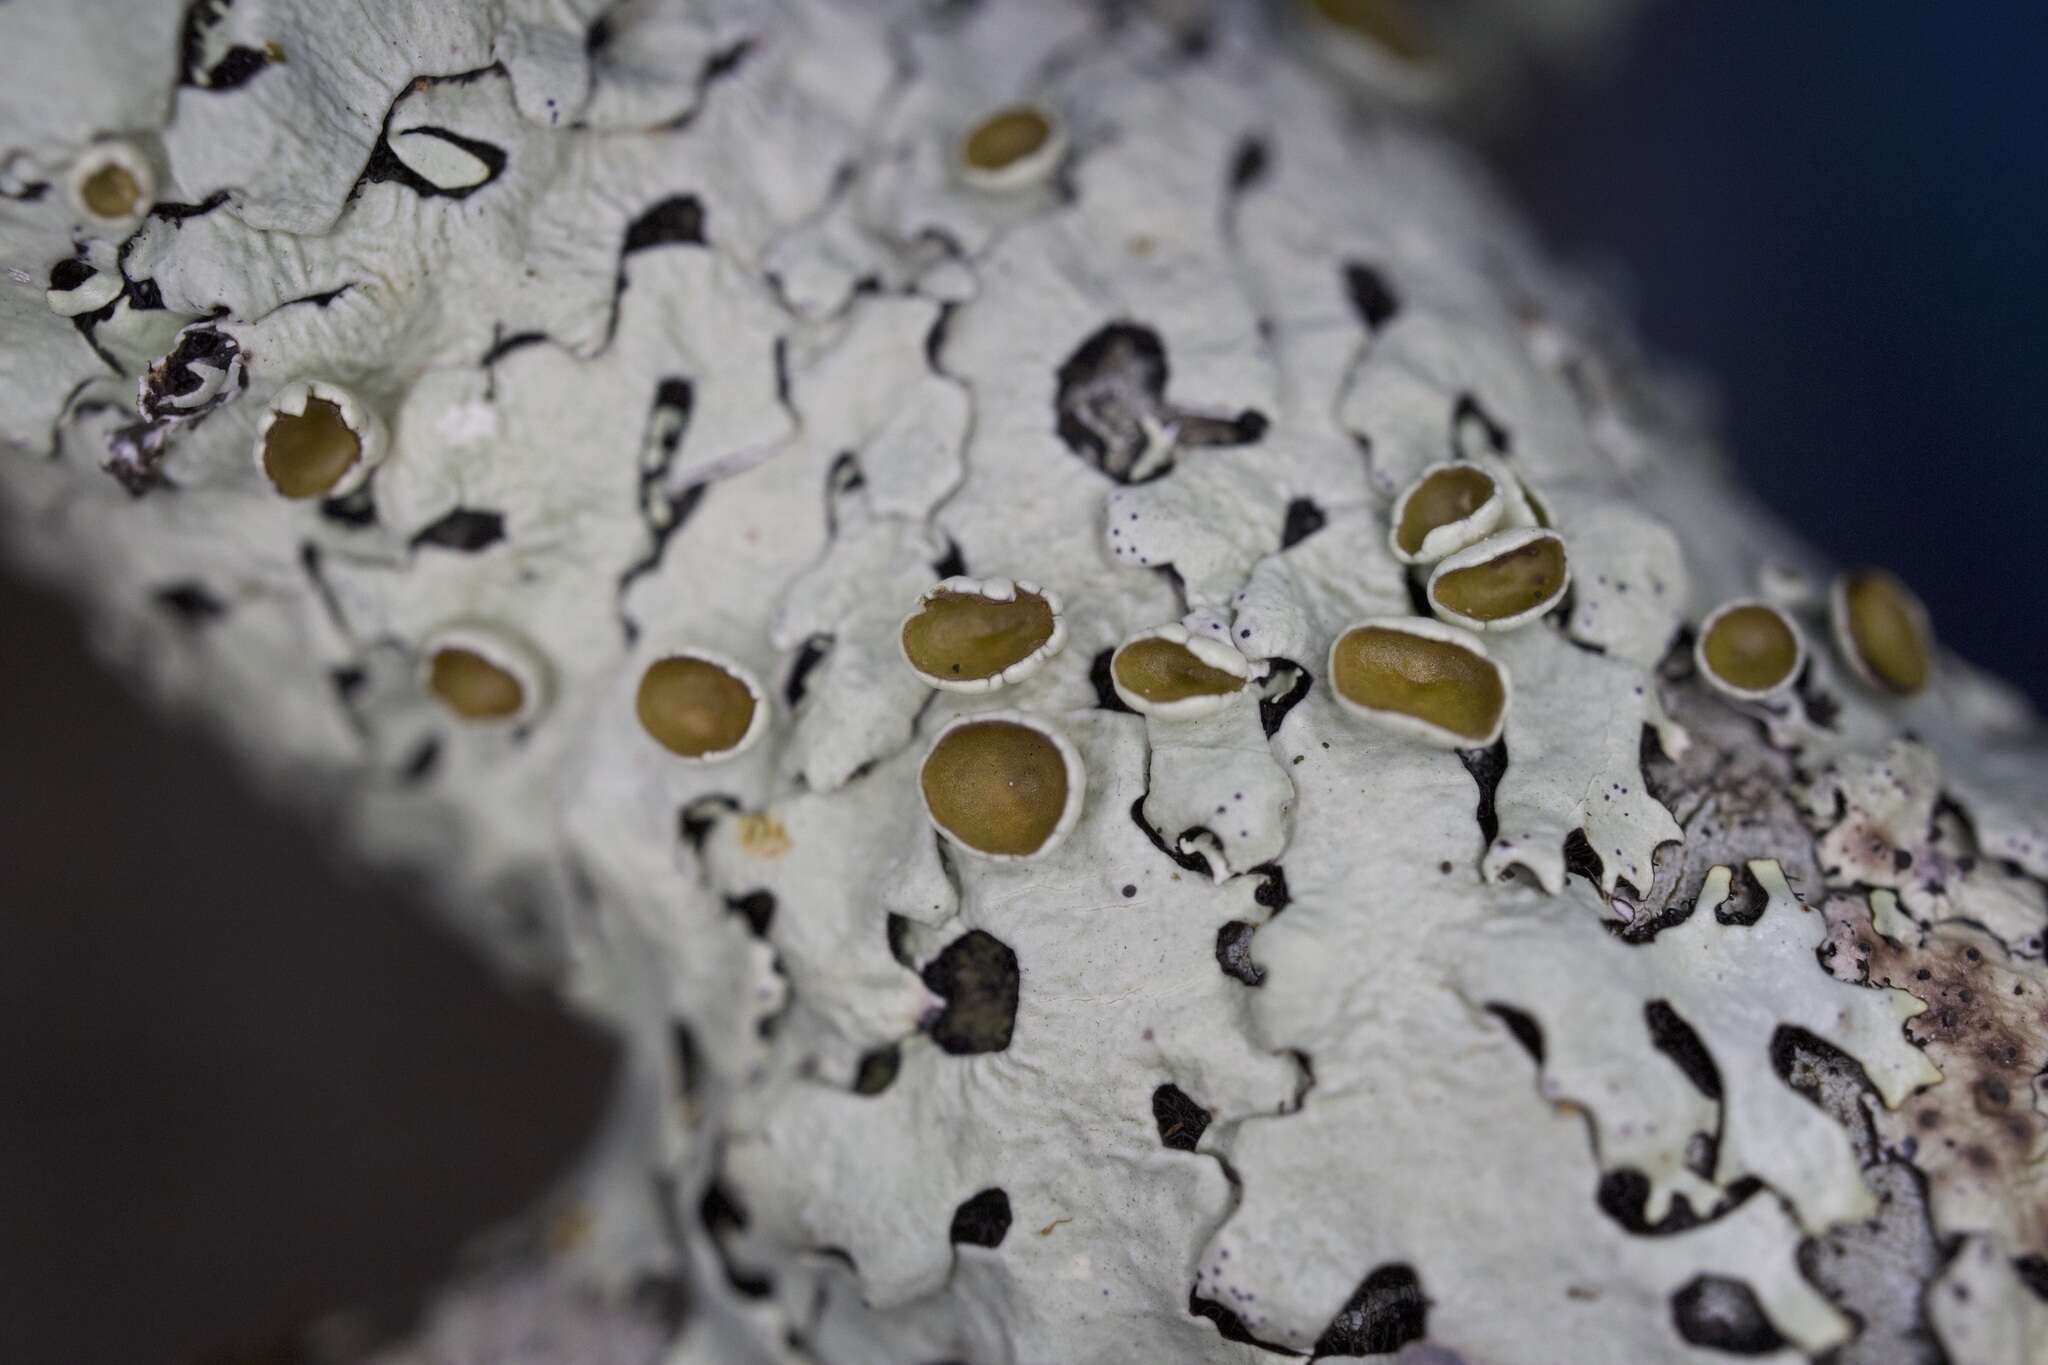 Image of hypotrachyna lichen